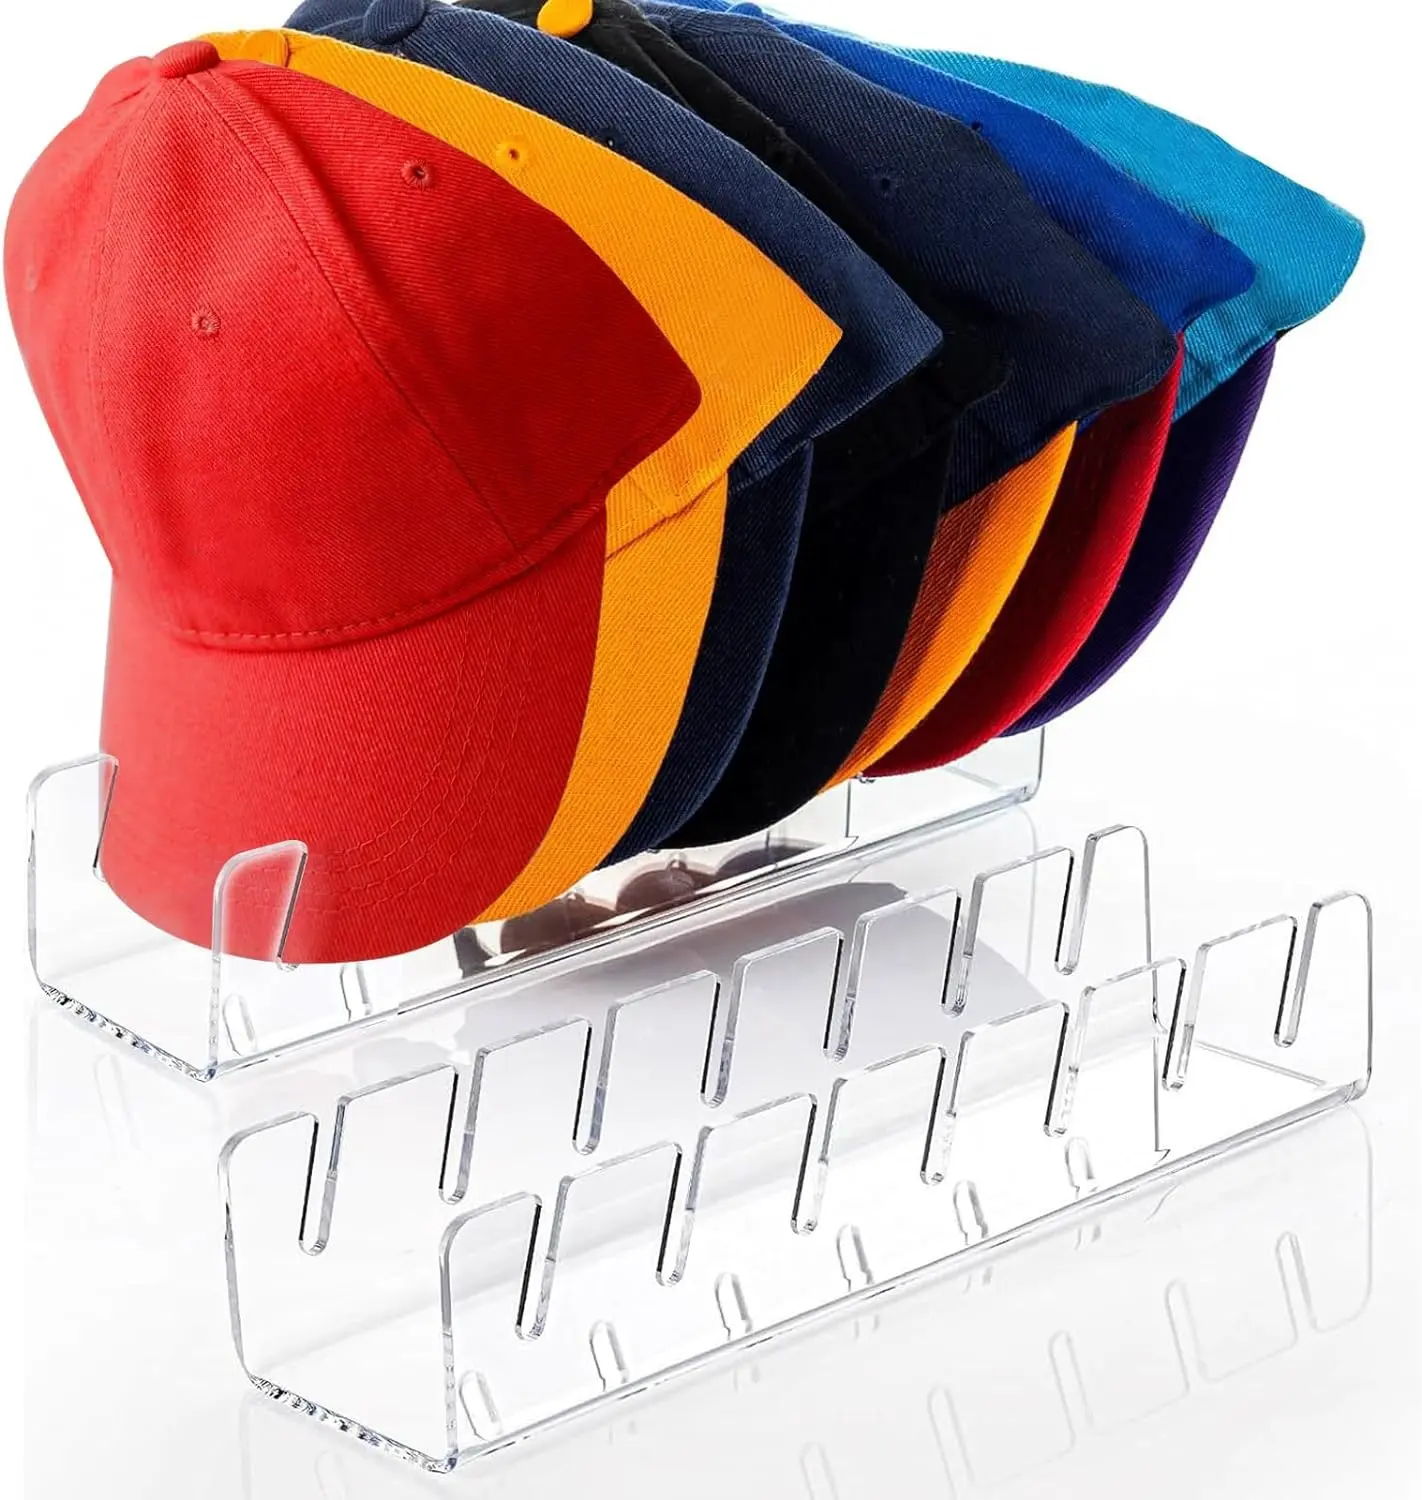 야구 모자용 모자 스탠드 주최자, 2 팩 14 개 야구 모자, 모자 랙 디스플레이 보관용 투명 아크릴 모자 홀더 설치 금지